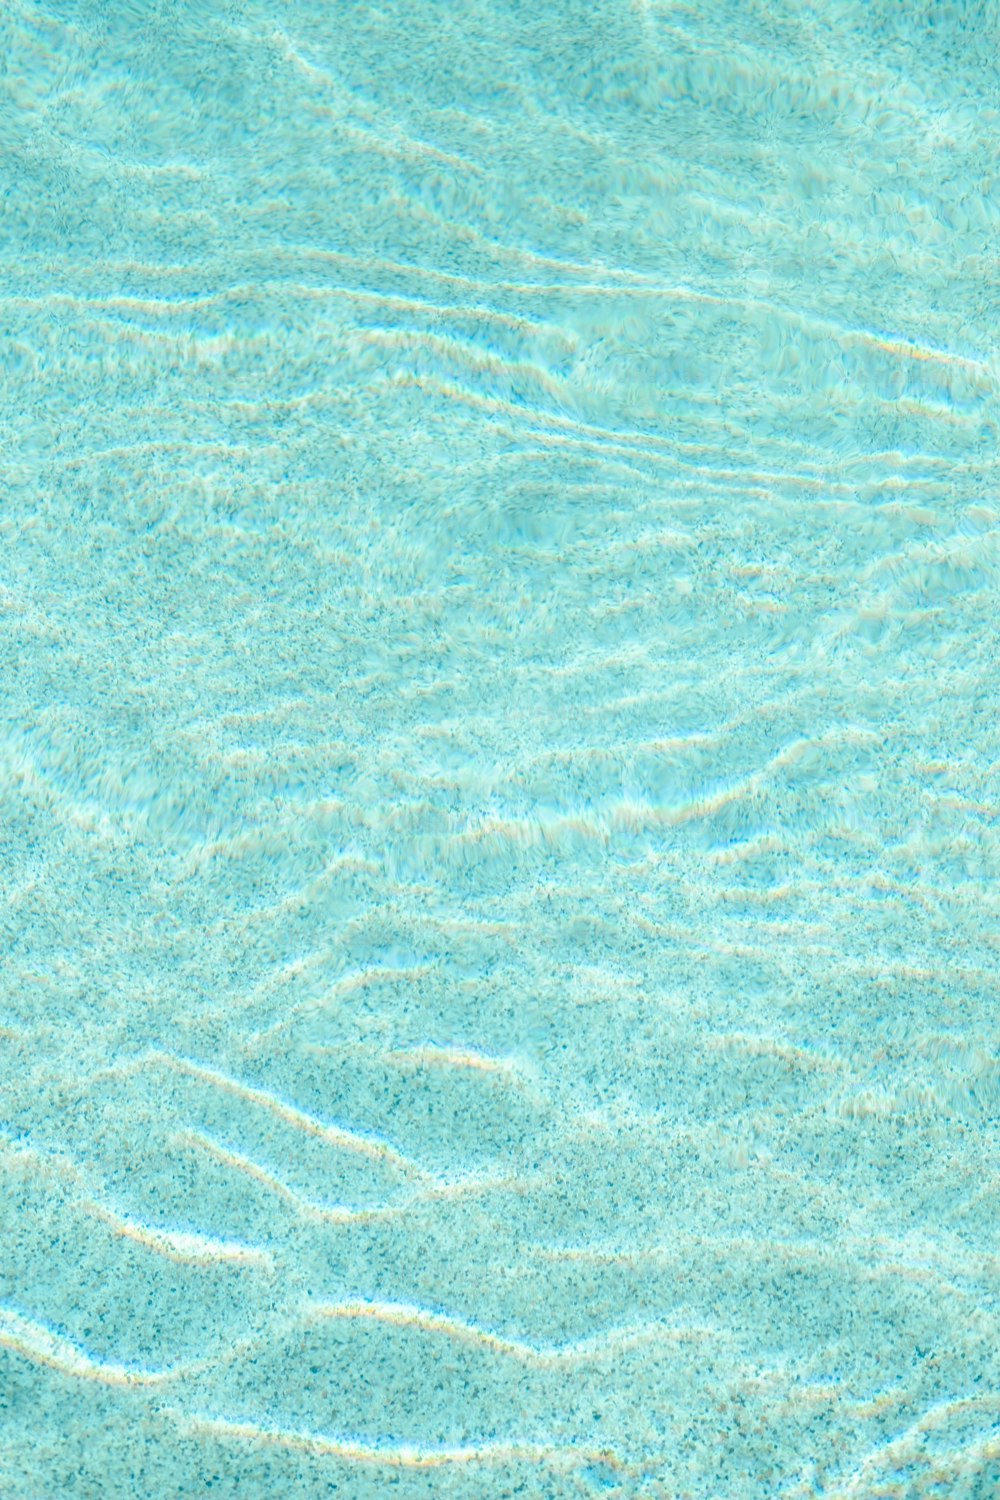 맑은 물과 잔물결이 있는 푸른 수영장